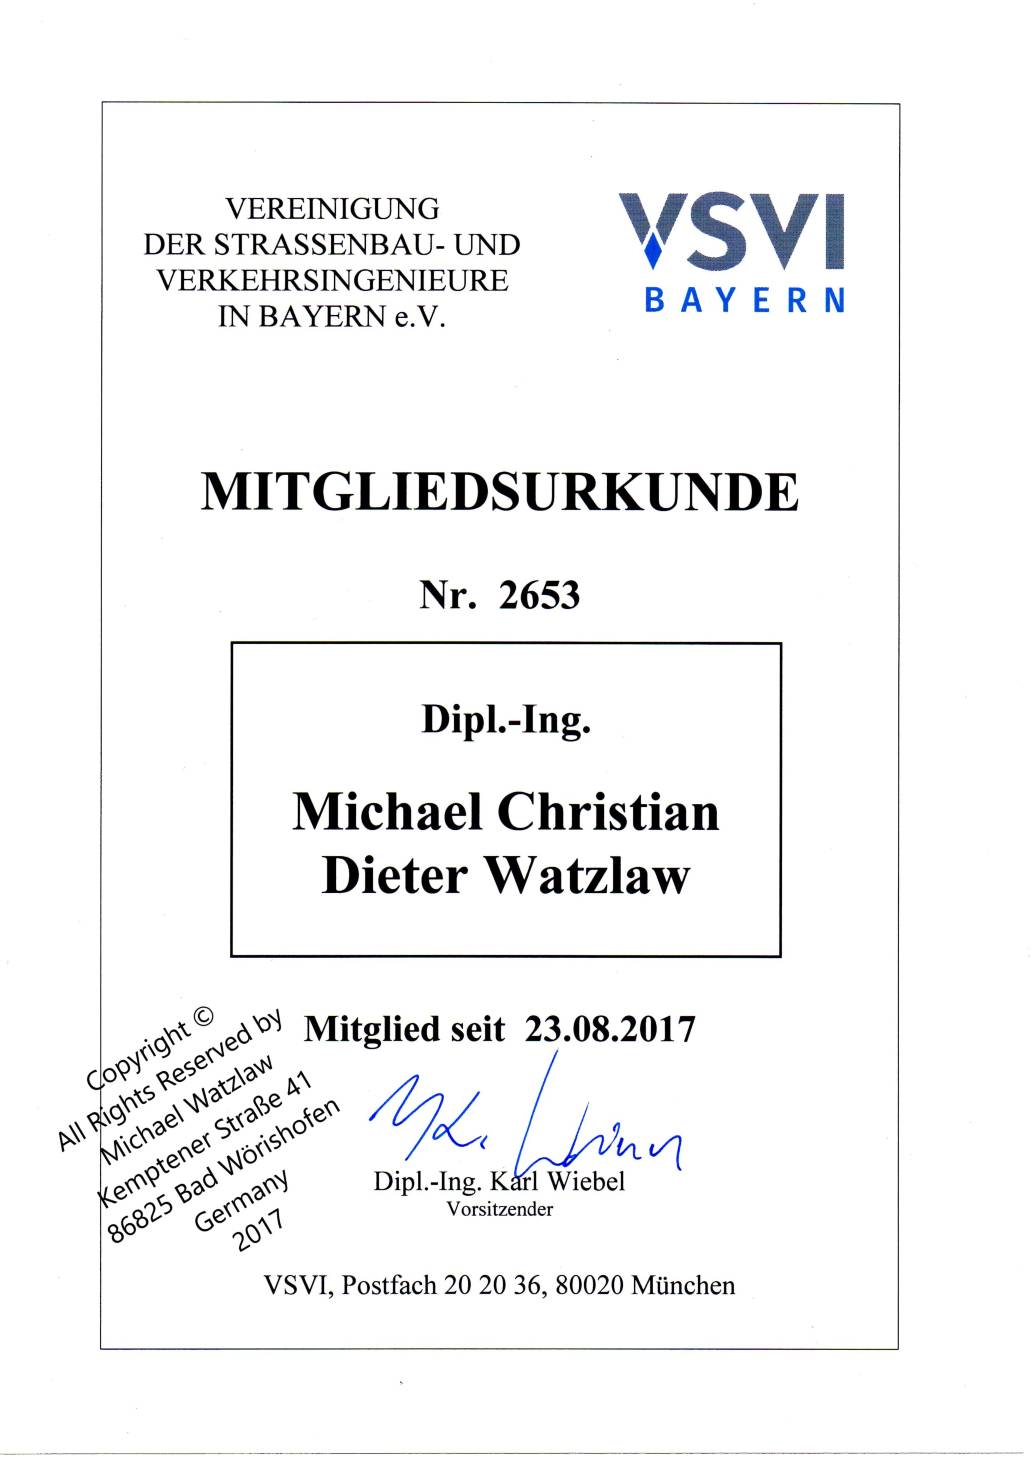 Referenz Vereinigung der Strassenabu- und Verkehrsingenirure in Bayern e.V.